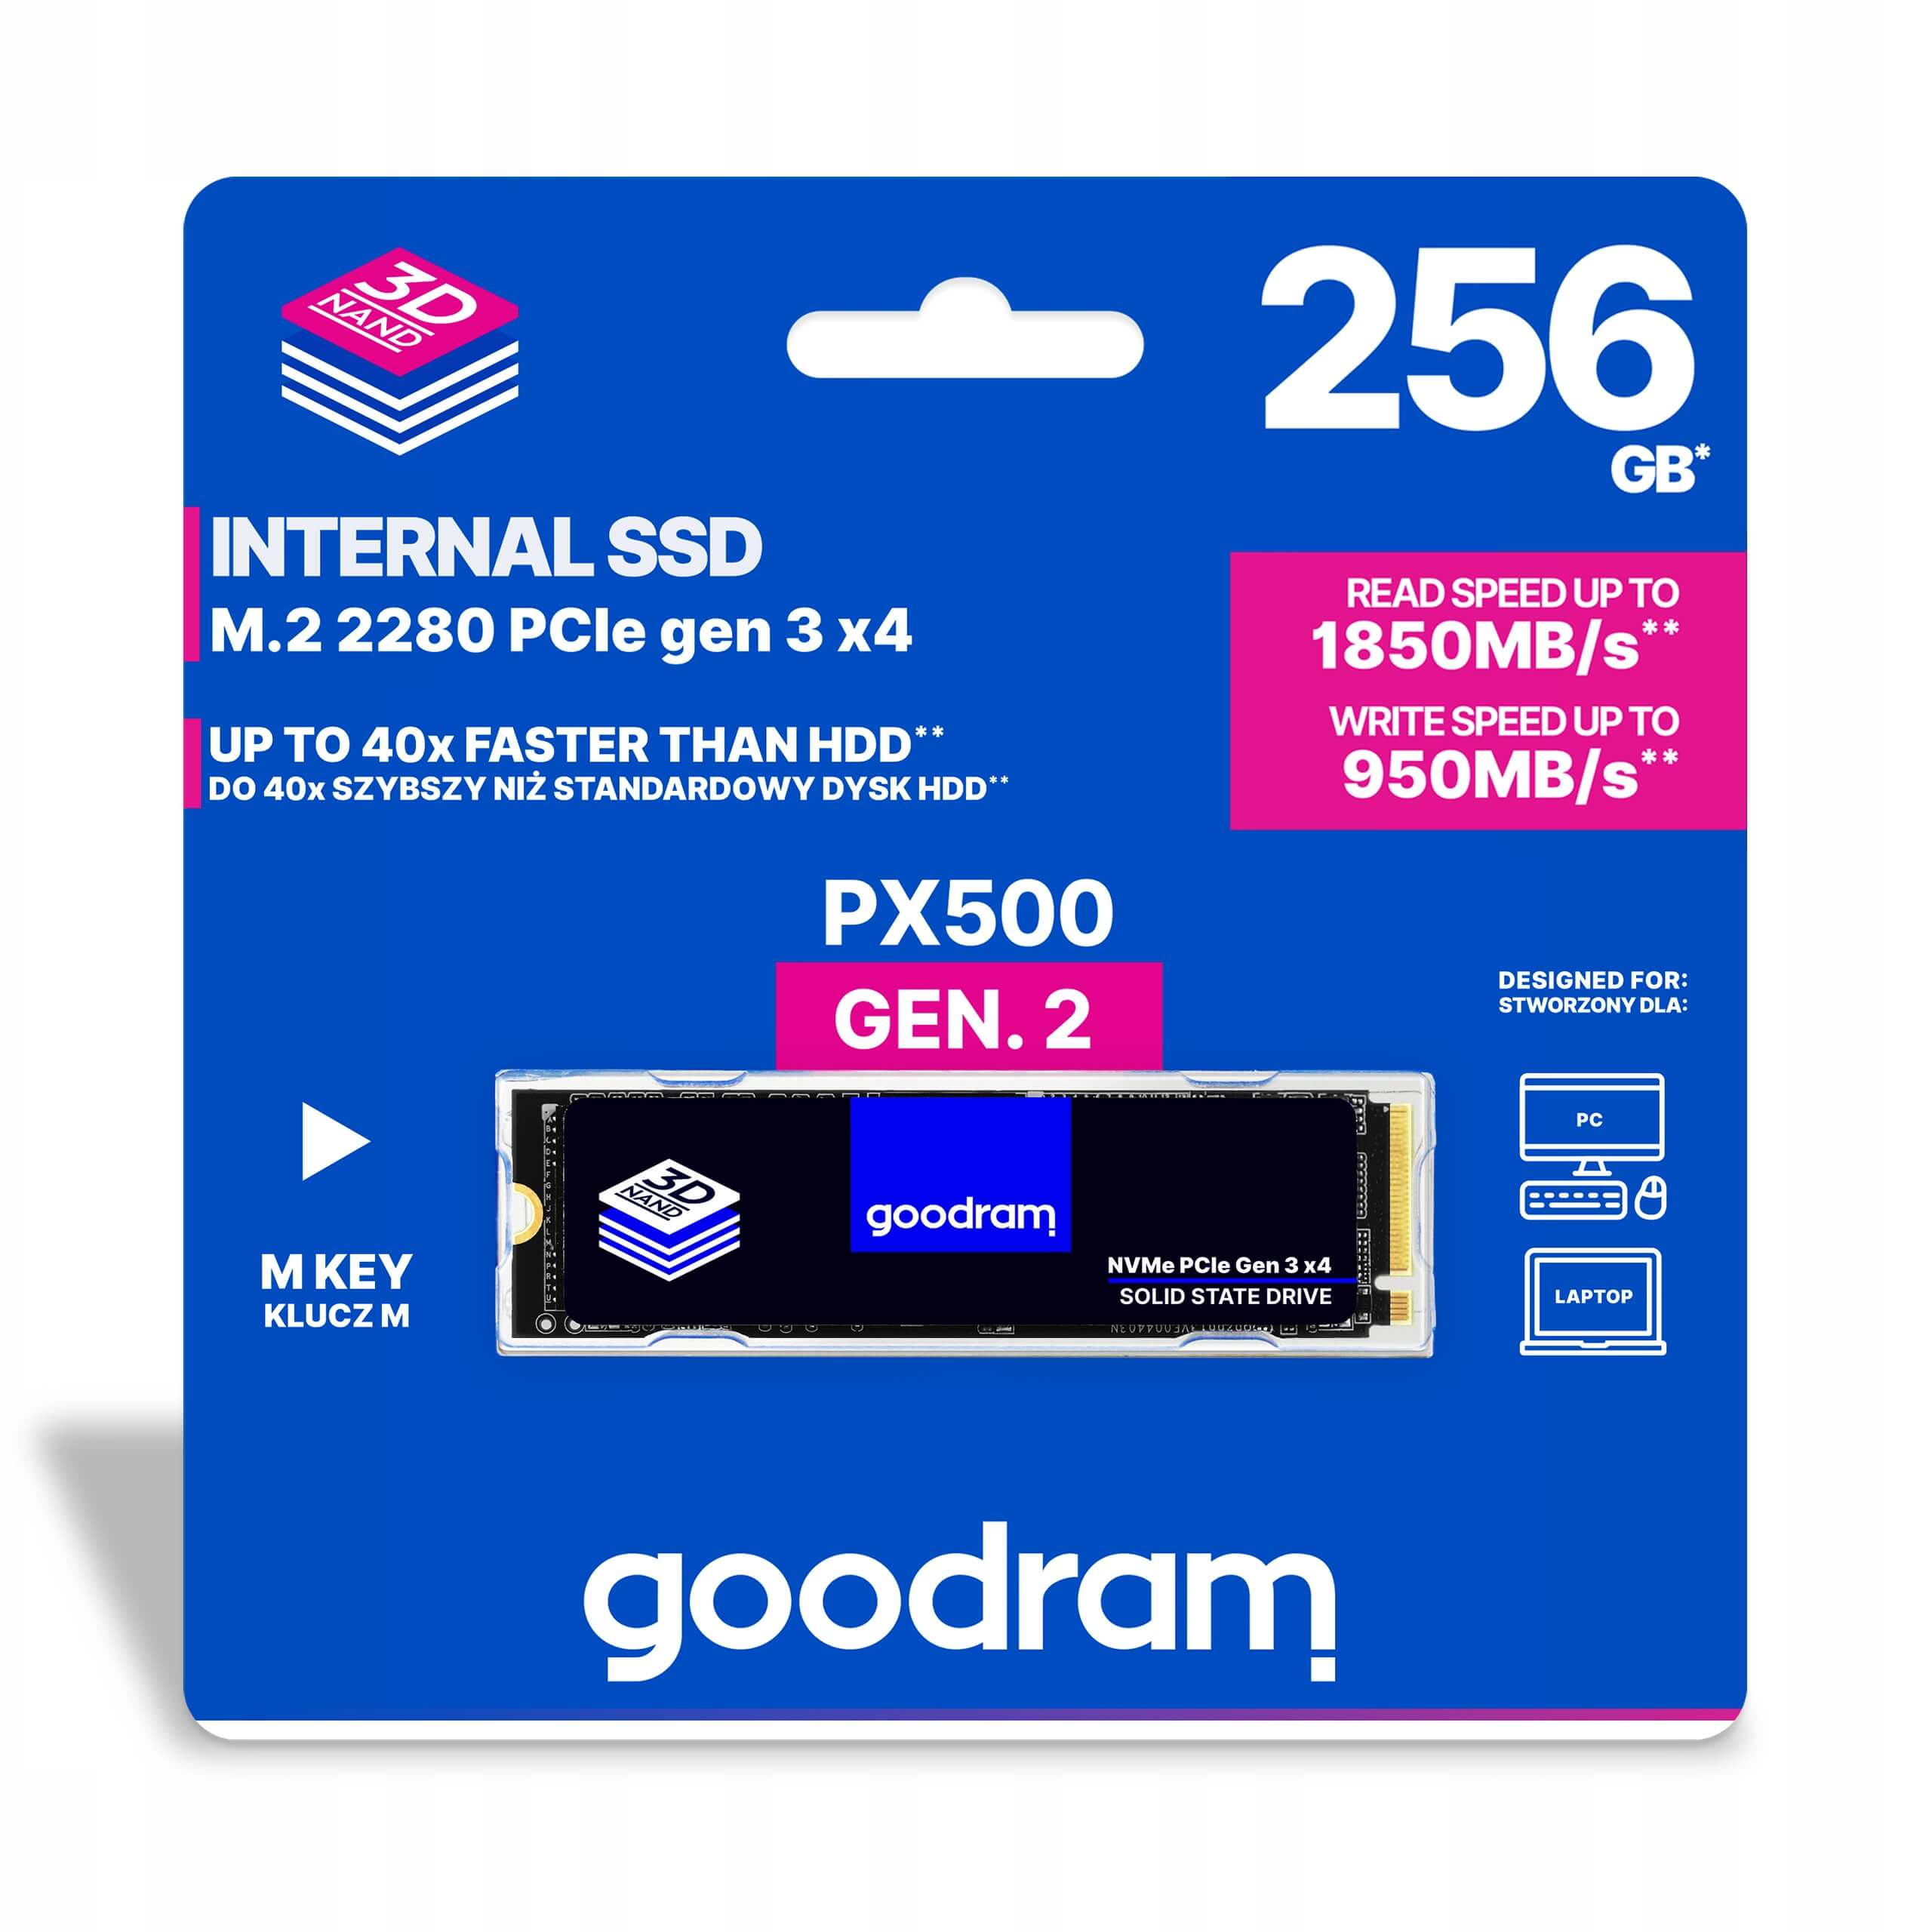 DYSK SSD GOODRAM PX500 GEN. 2 256GB M.2 2280 PCI-E NVME NOWY